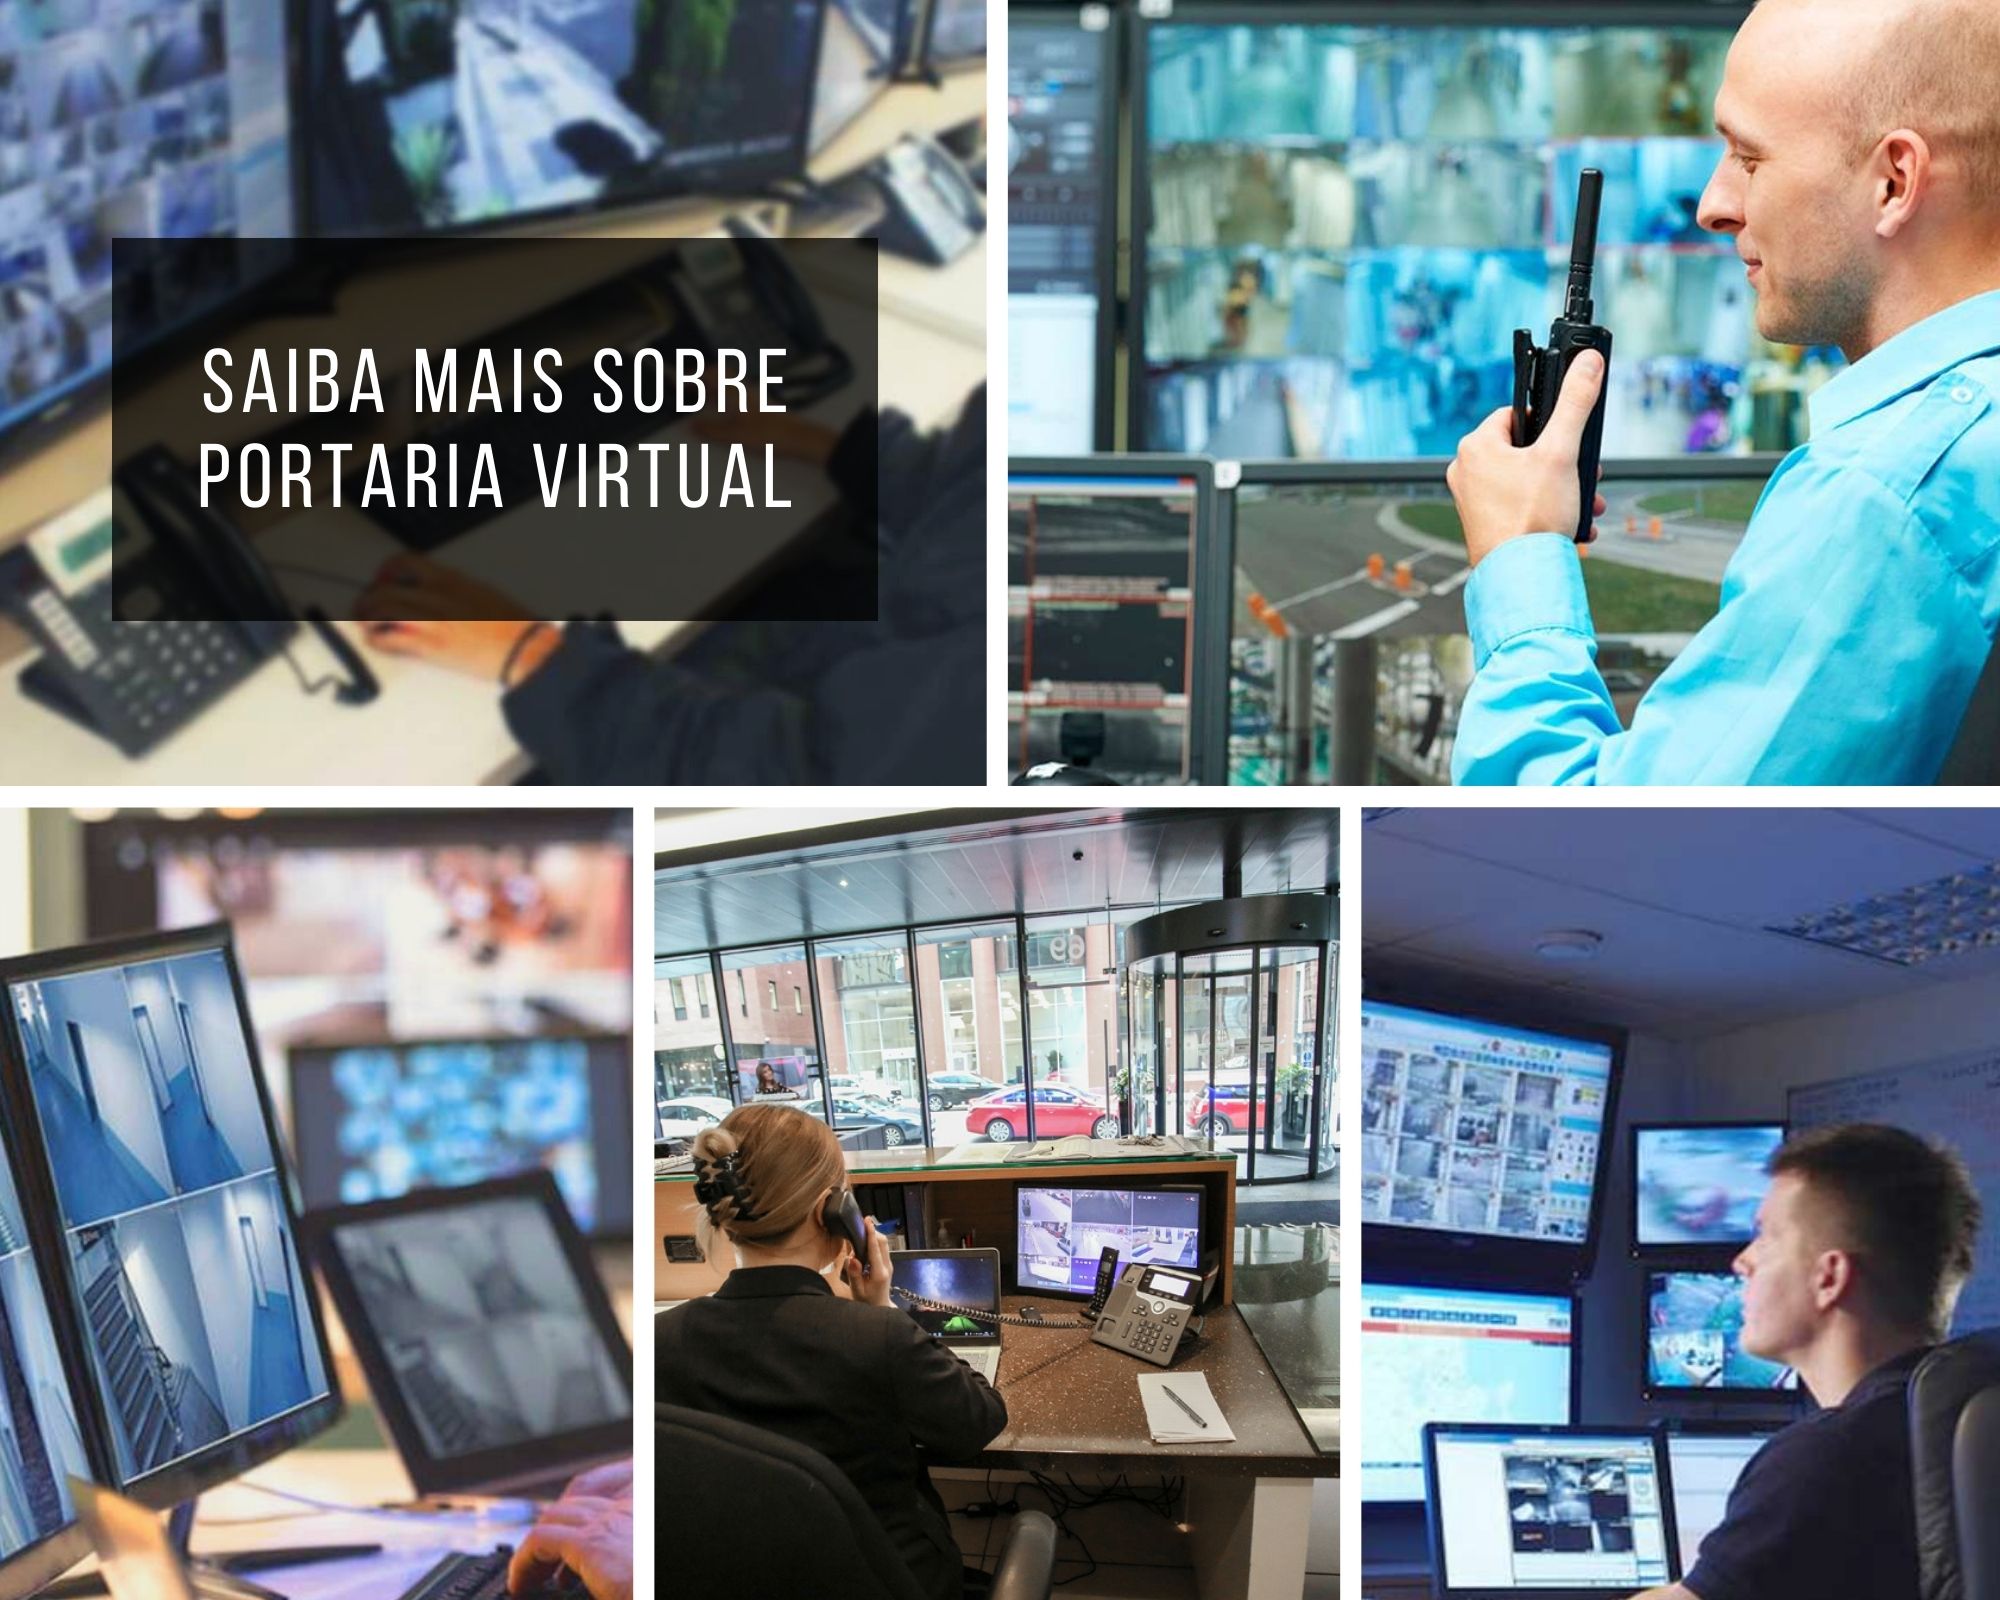 Dúvidas sobre portaria virtual em São Paulo